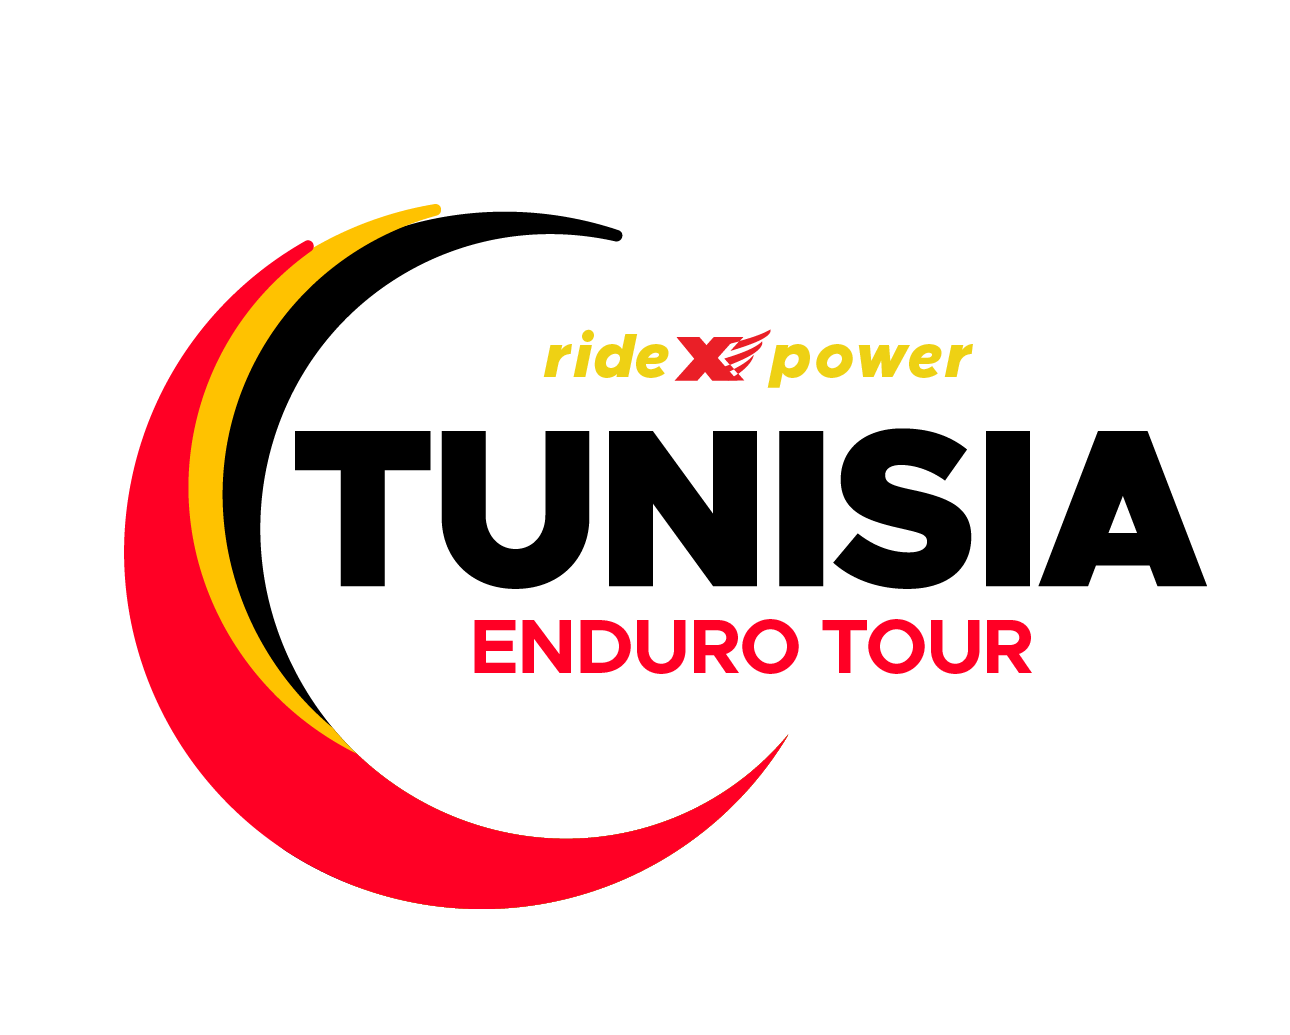 Tunisia Enduro Tour